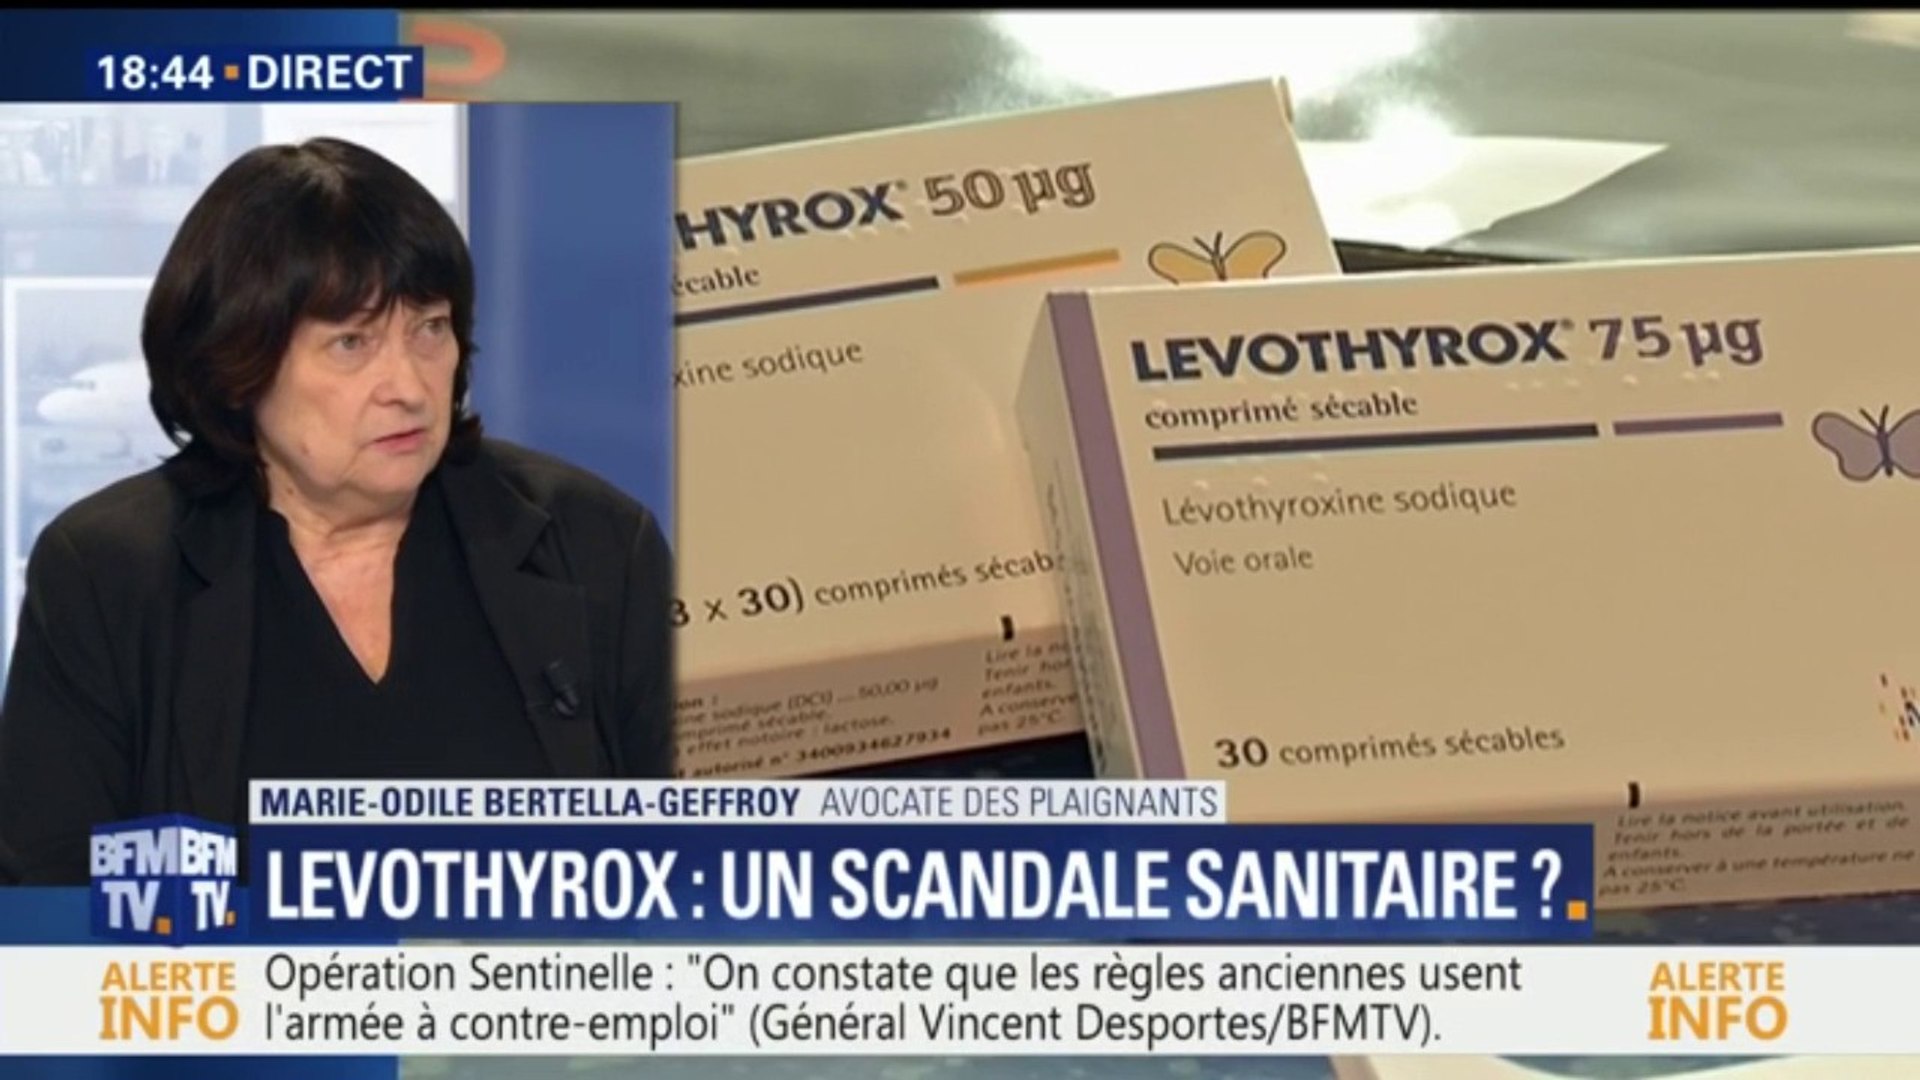 Levothyrox: "C'est une crise sanitaire", dit l'avocate des plaignants -  Vidéo Dailymotion